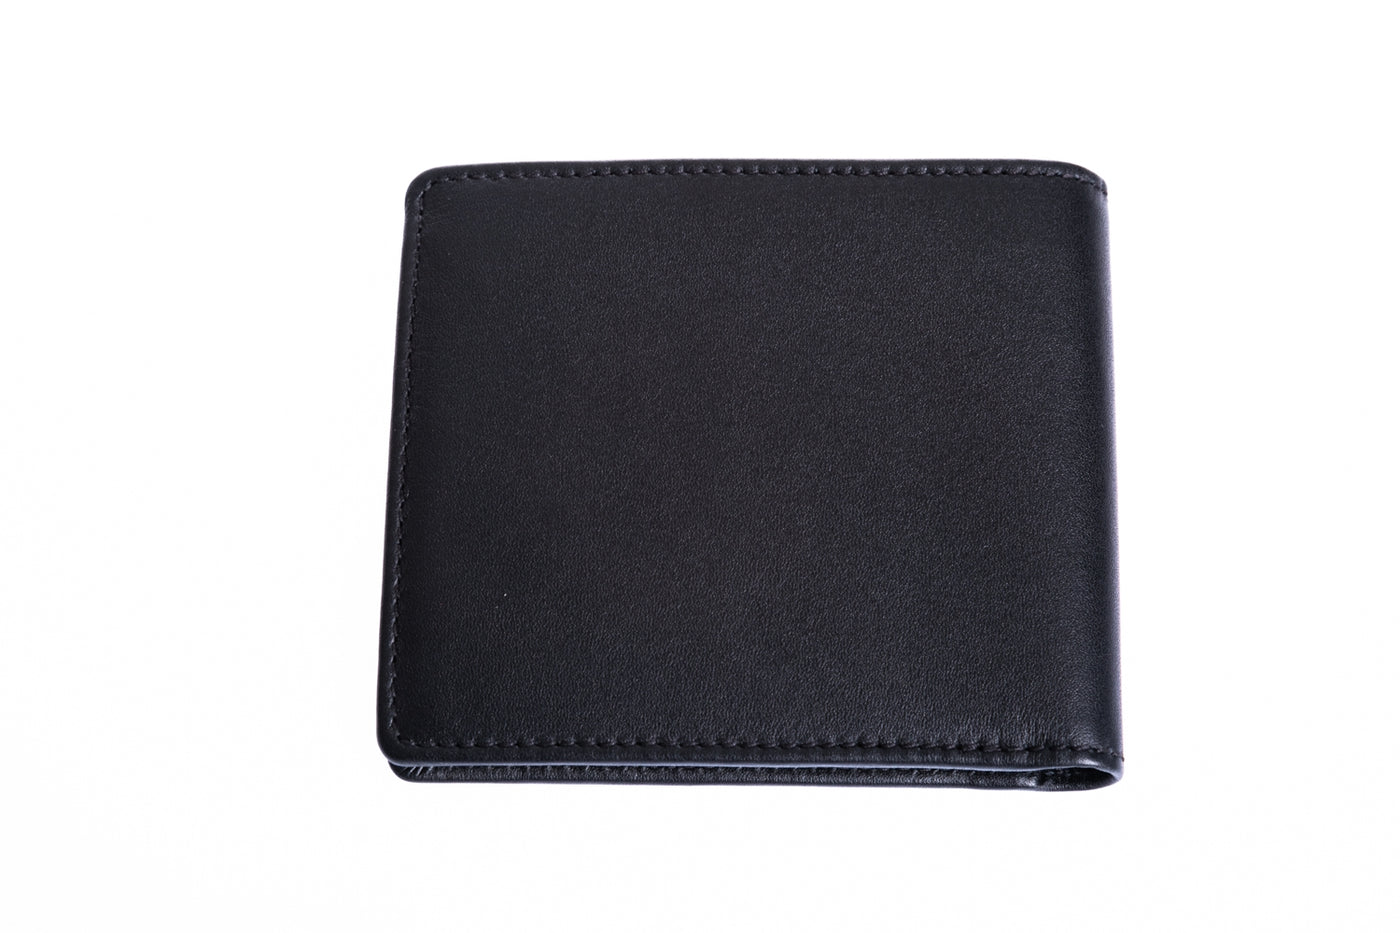 BOSS Majestic_S 8CC Wallet in Black